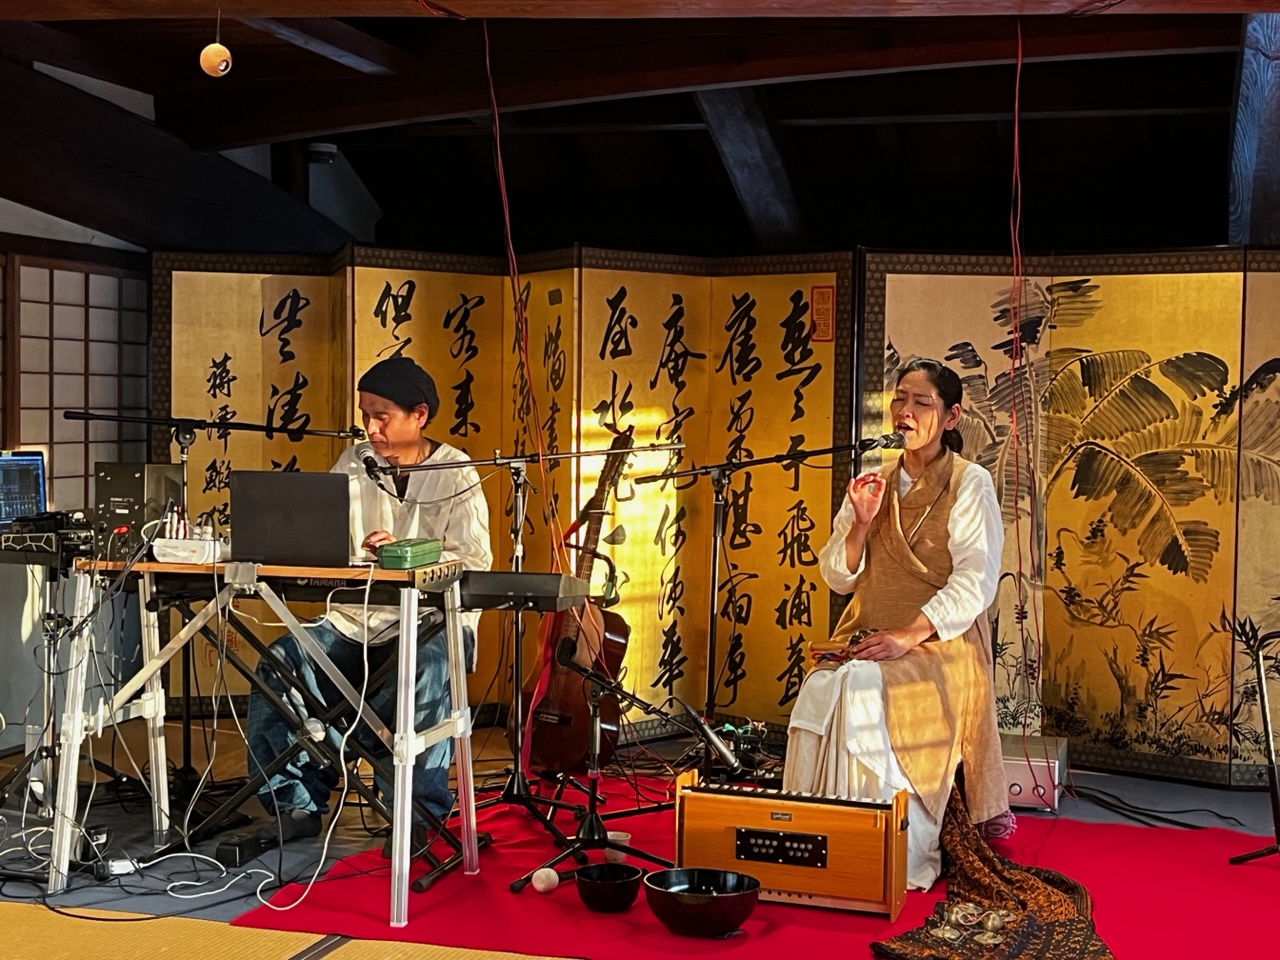 旧伴家住宅でのKikoh MatsuuraとAWAYAによるコラボレーションライブの演奏中の写真